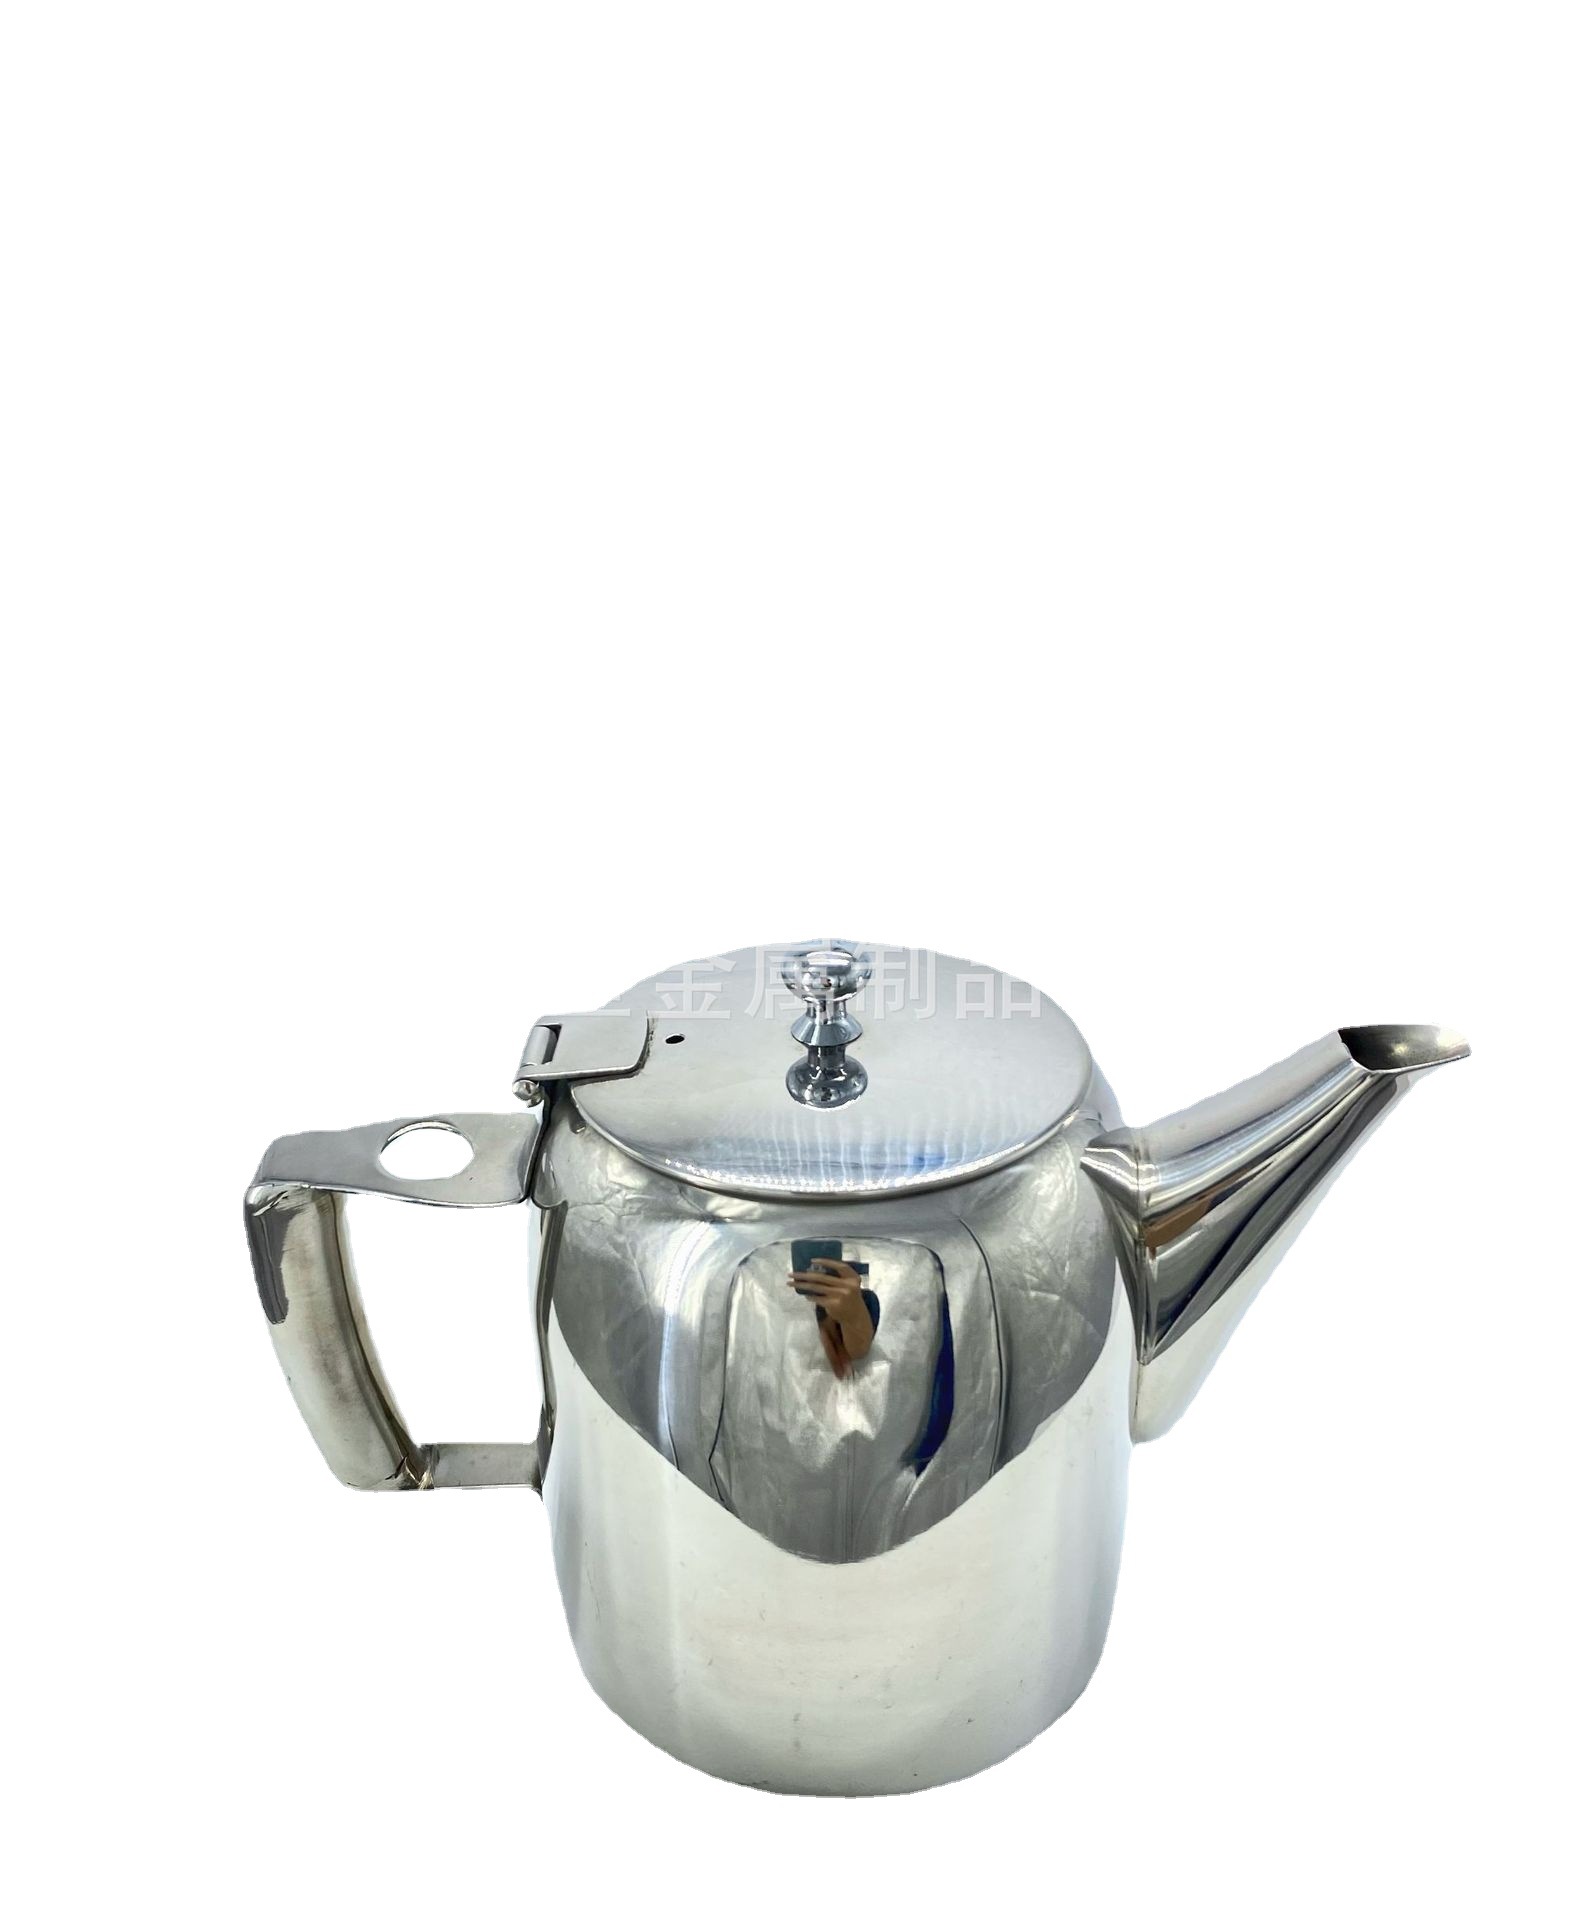 不锈钢咖啡壶热水壶摩卡壶泡咖啡长嘴茶壶餐厅酒店用品咖啡器具